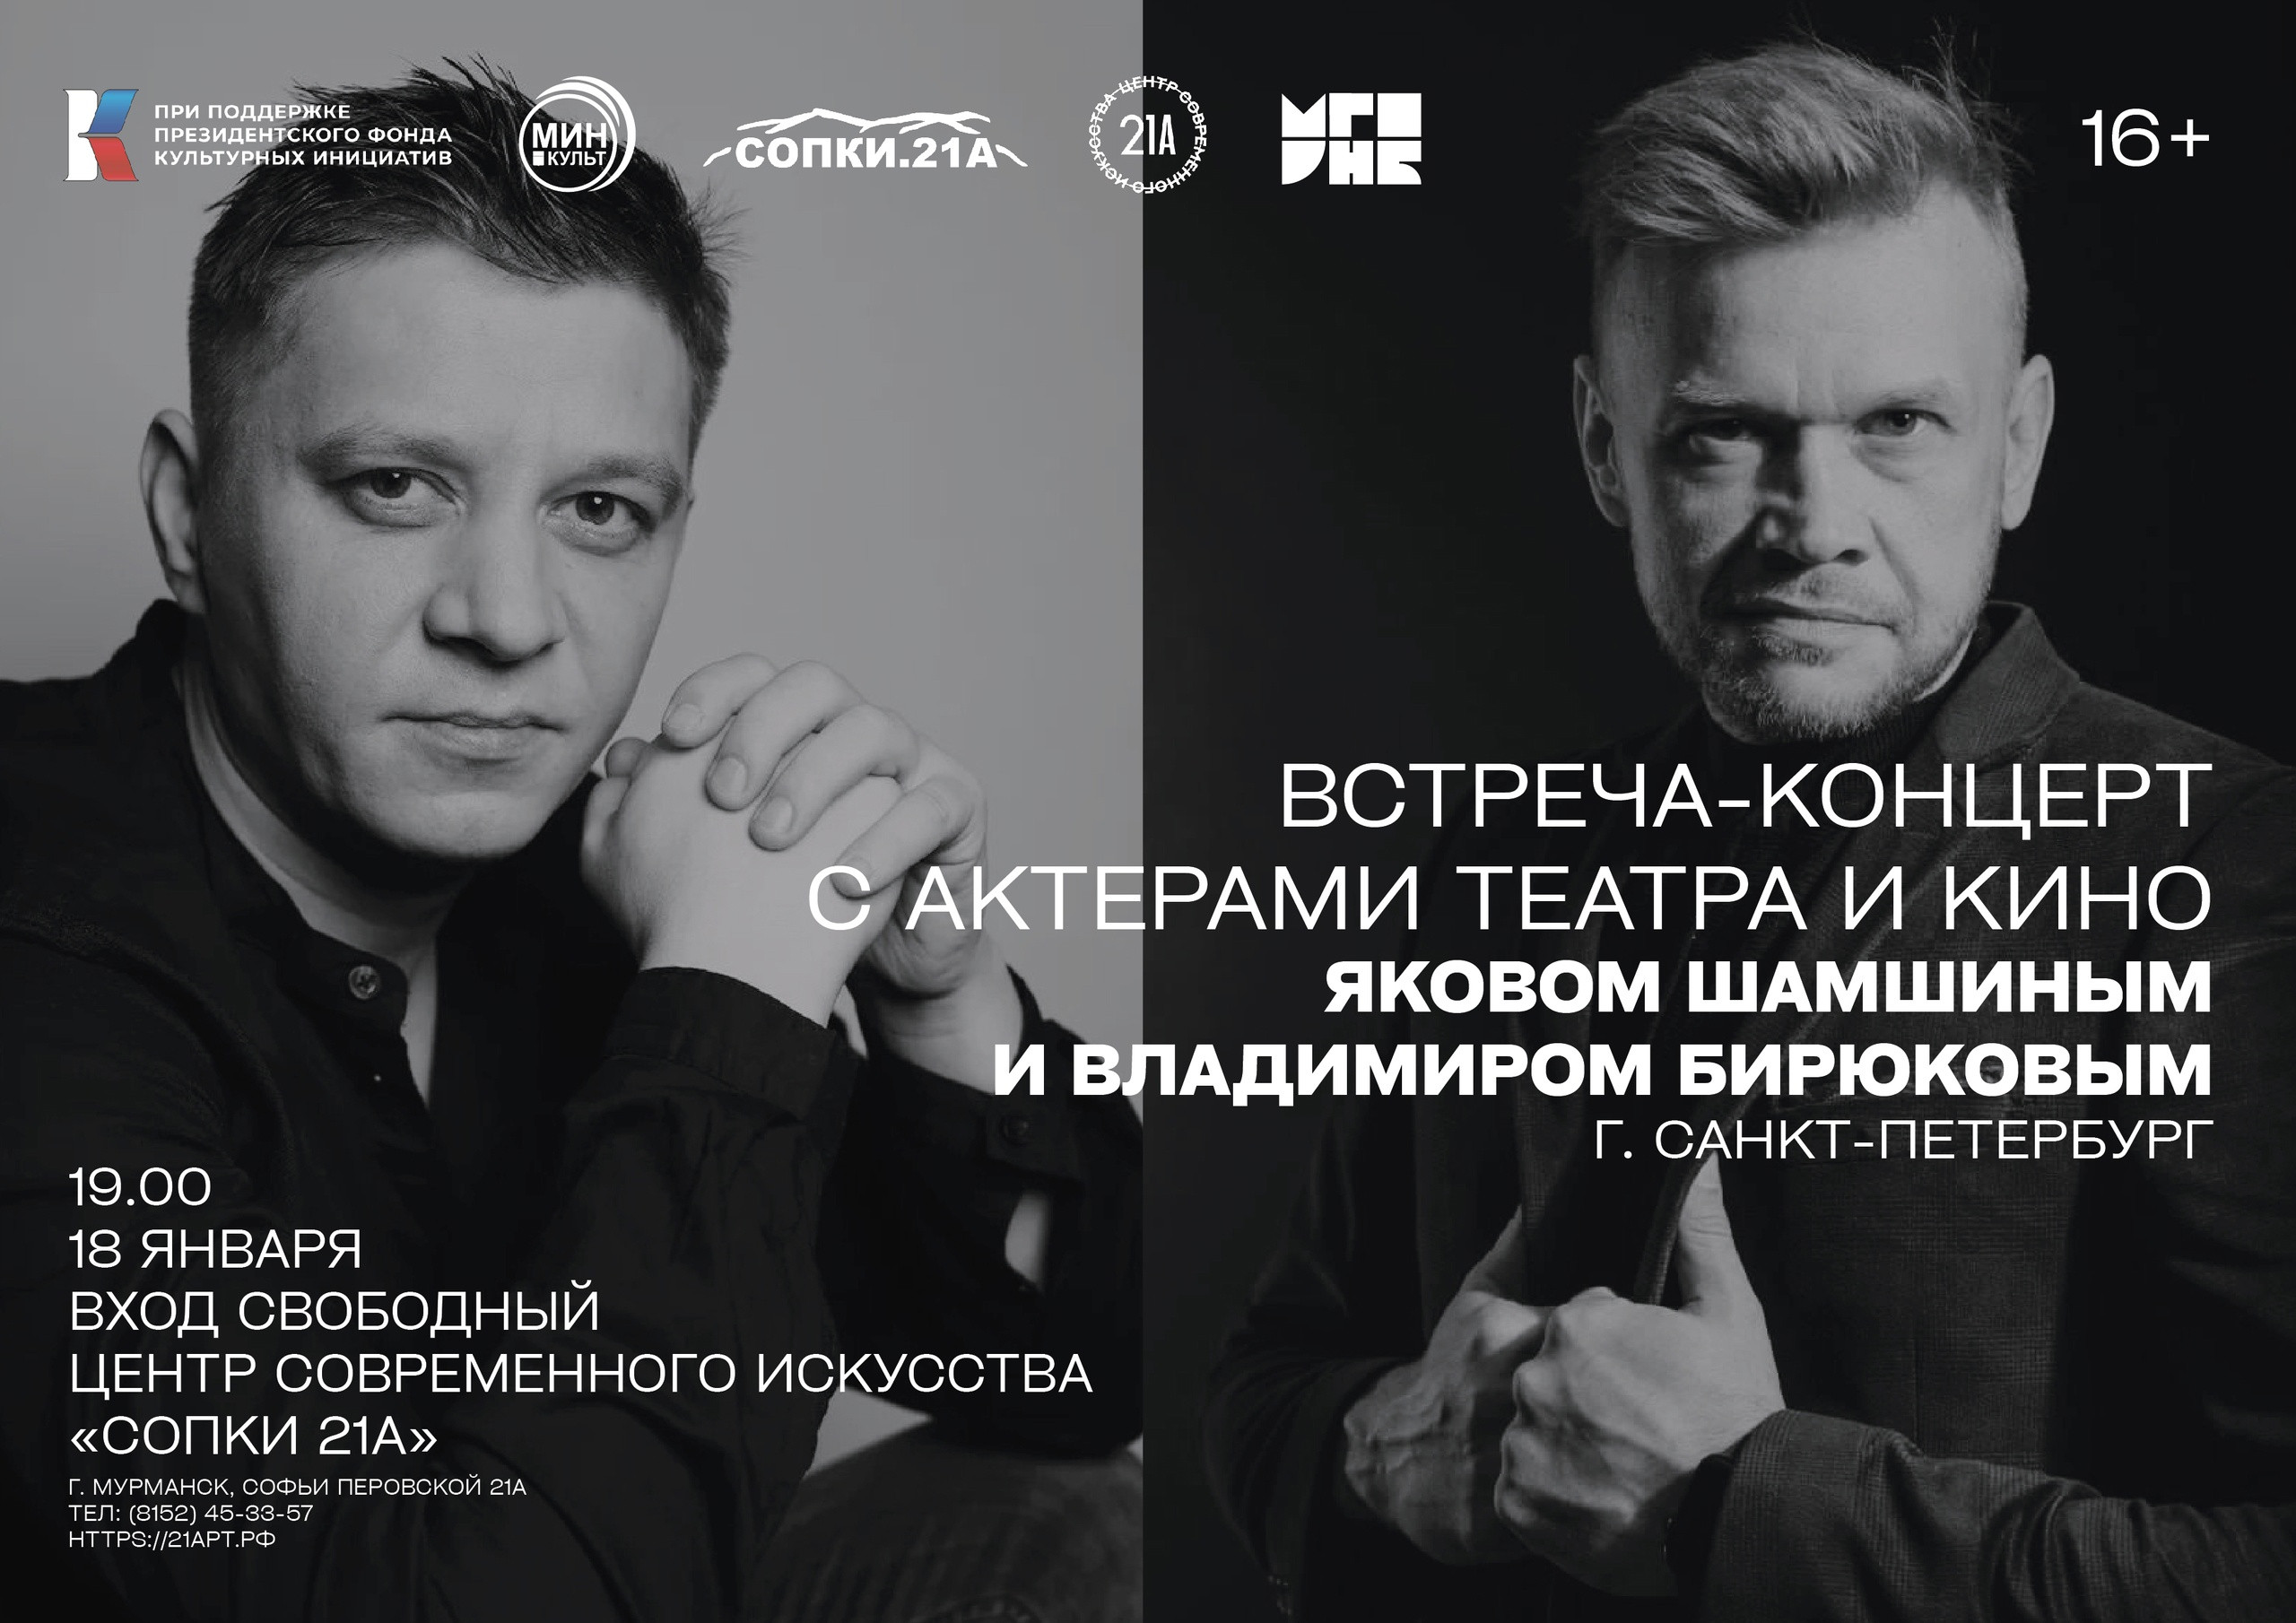 В Мурманске состоится встреча-концерт с актерами театра и кино